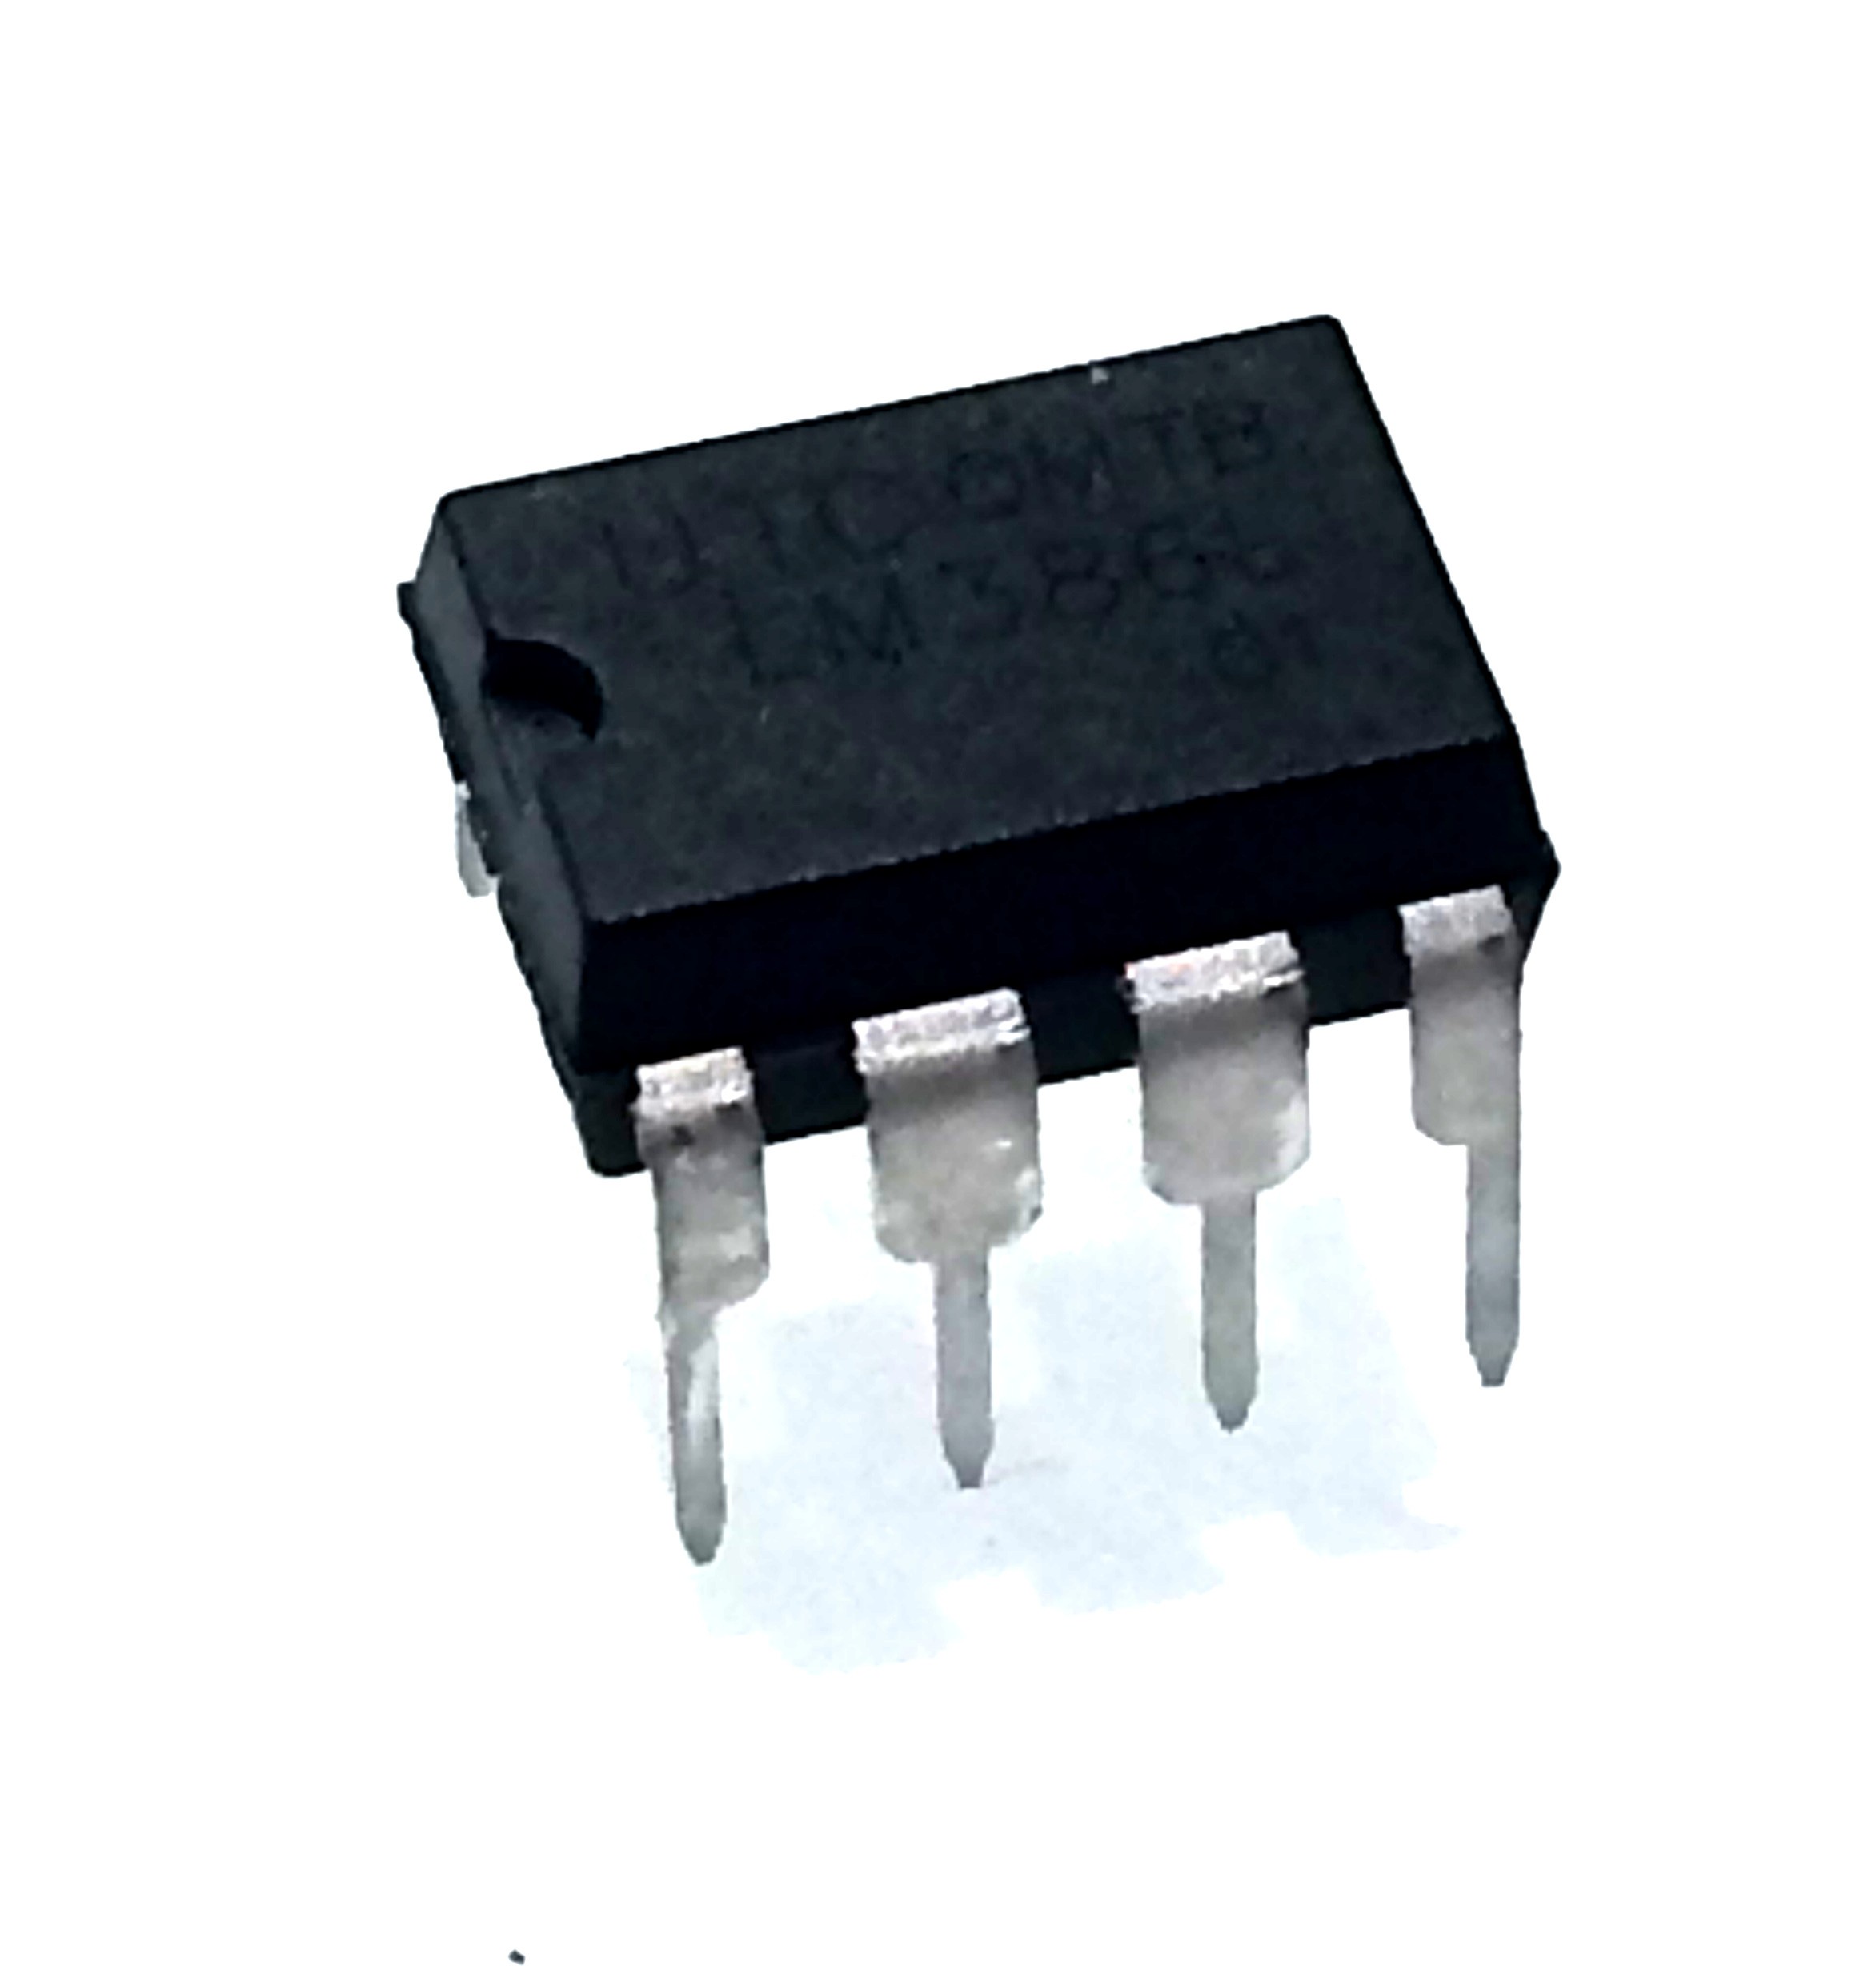 2 x lm386 m-1 SMD Low Voltage Audio Power Amp Verstärker LM386 IC 